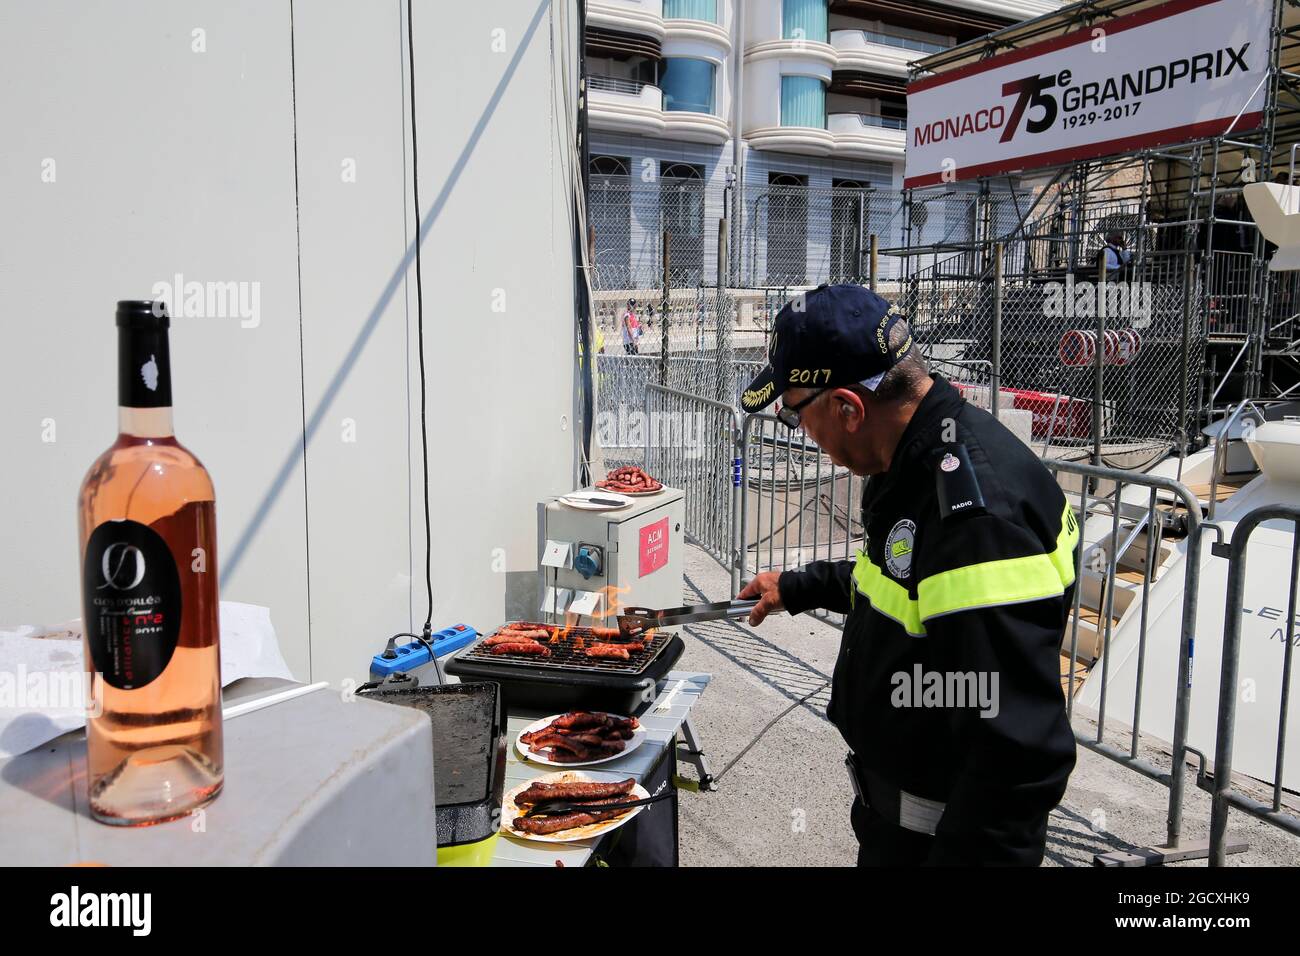 A marshal cooks lunch on the barbecue. Monaco Grand Prix, Saturday 27th May 2017. Monte Carlo, Monaco. Stock Photo